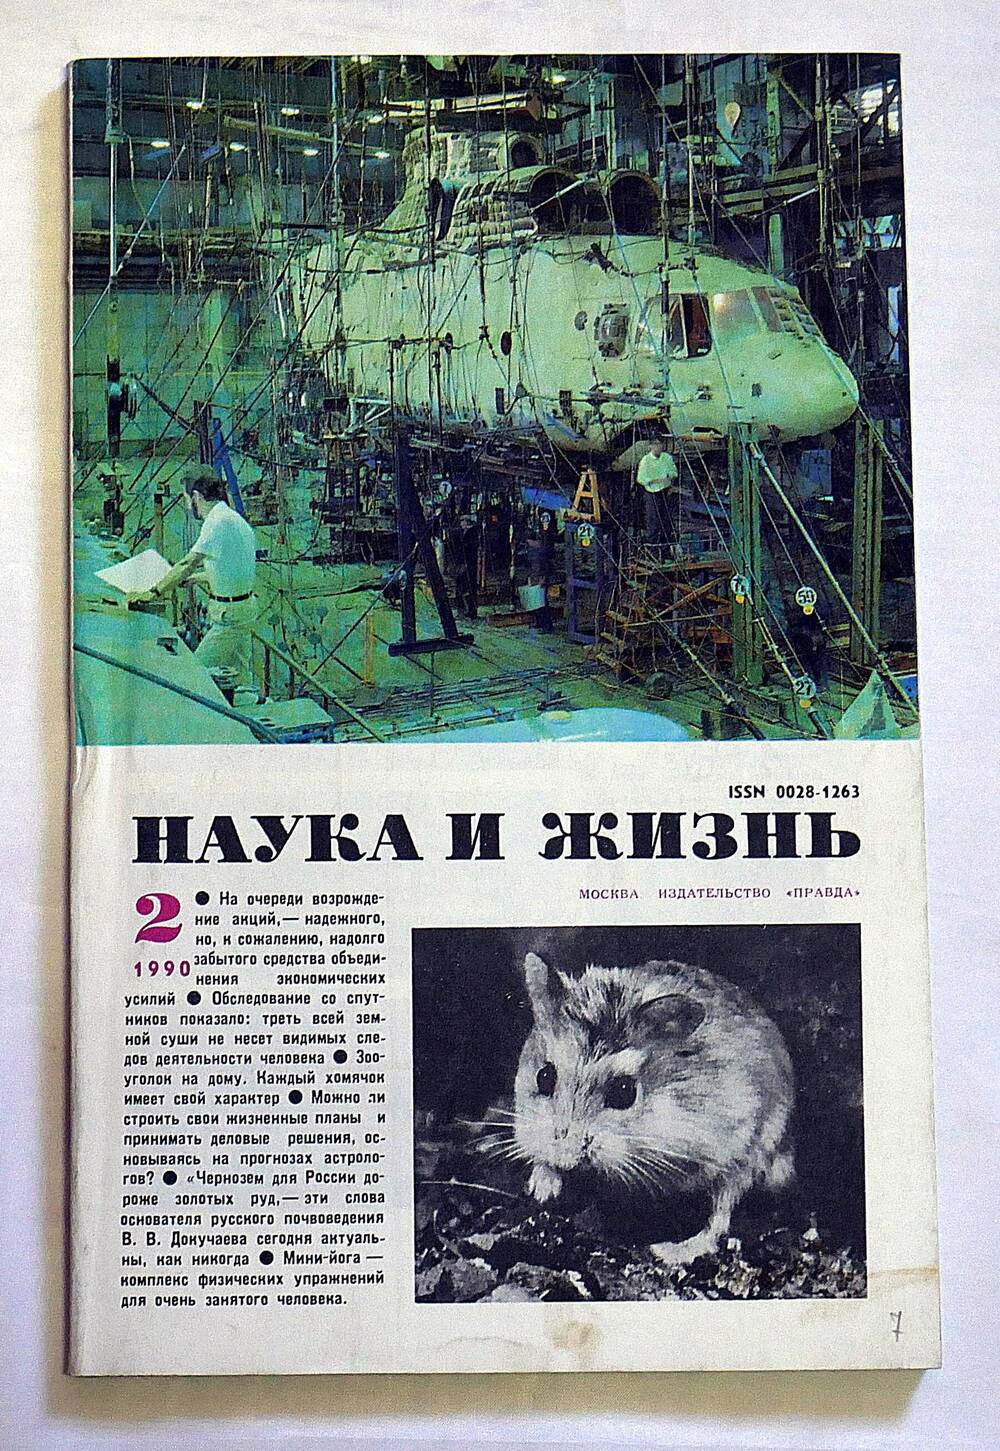 Журнал. Наука и жизнь. № 2 февраль 1990 г.